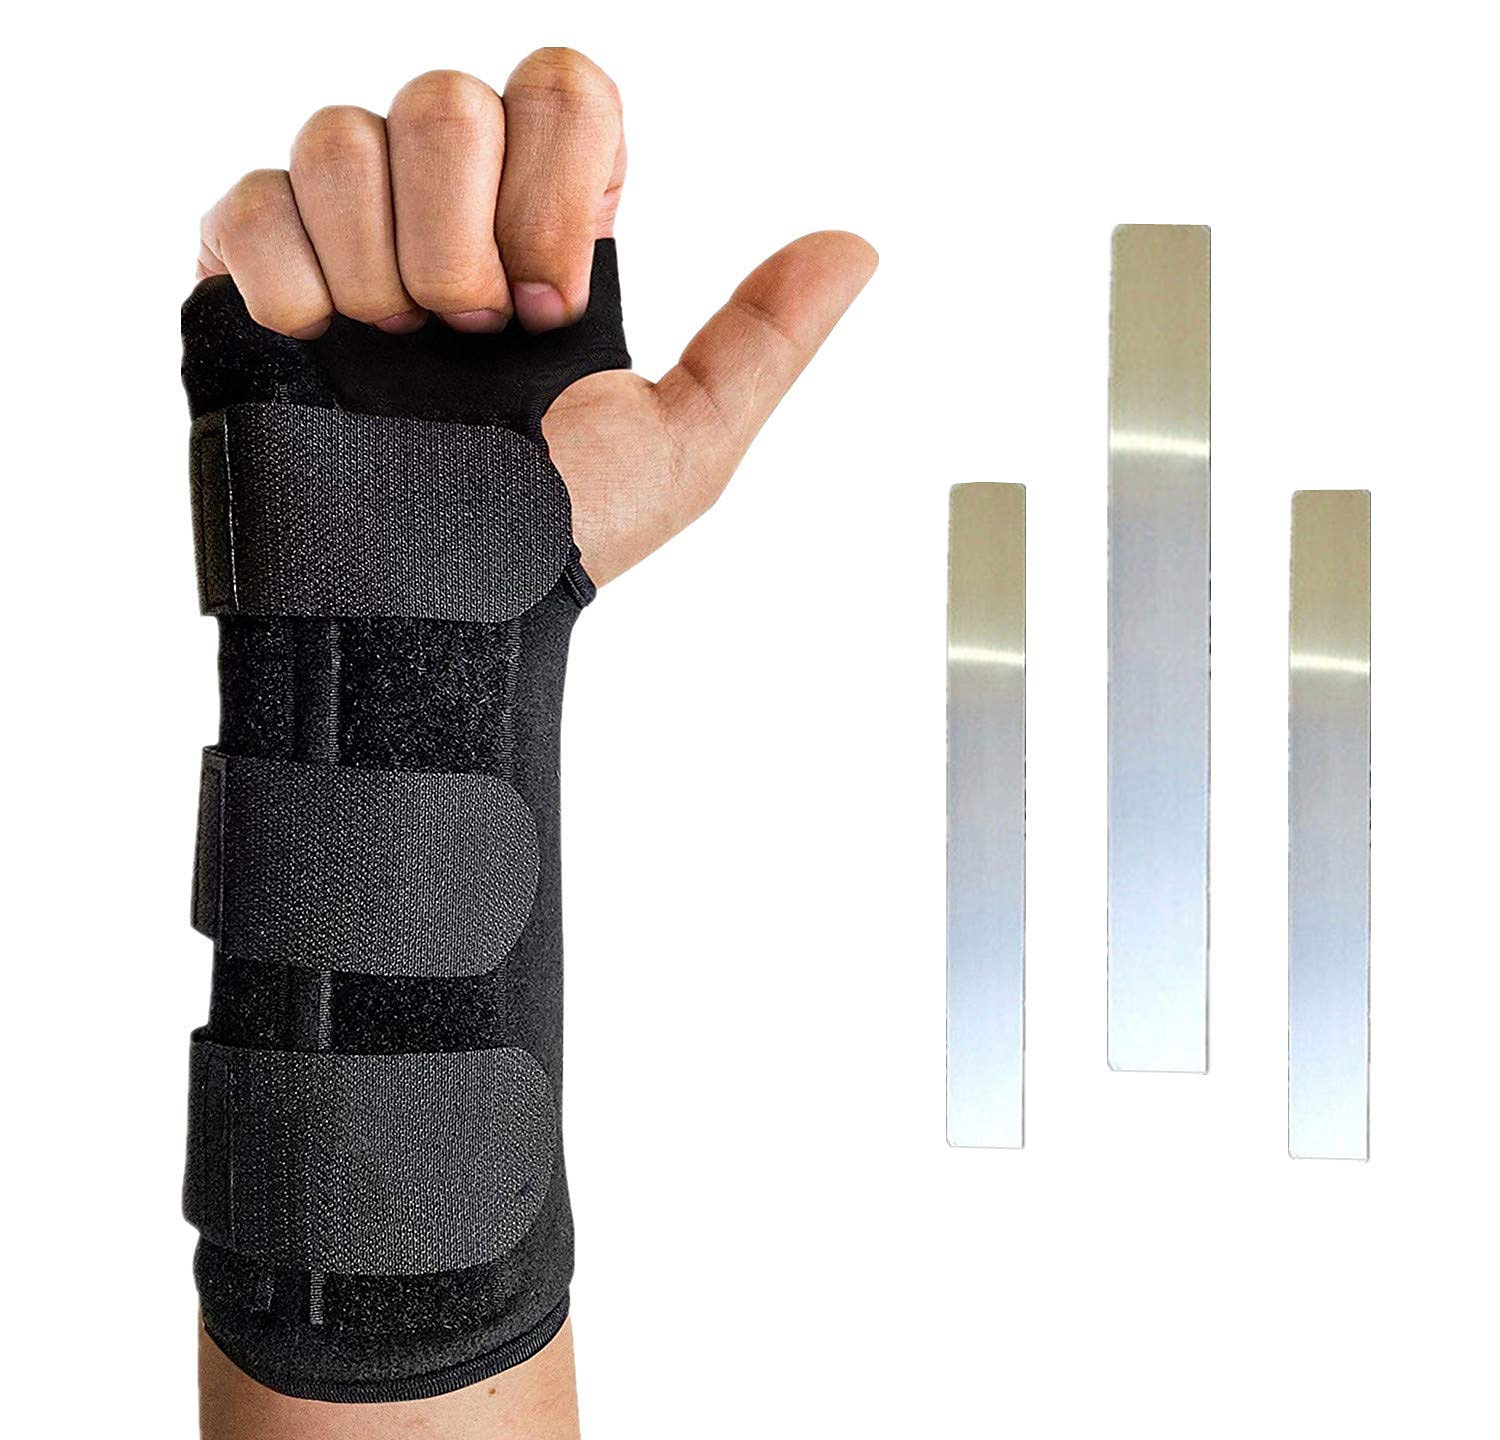 Night Sleep Wrist Support Brace - Adjustable Wrist Splint - Carpal